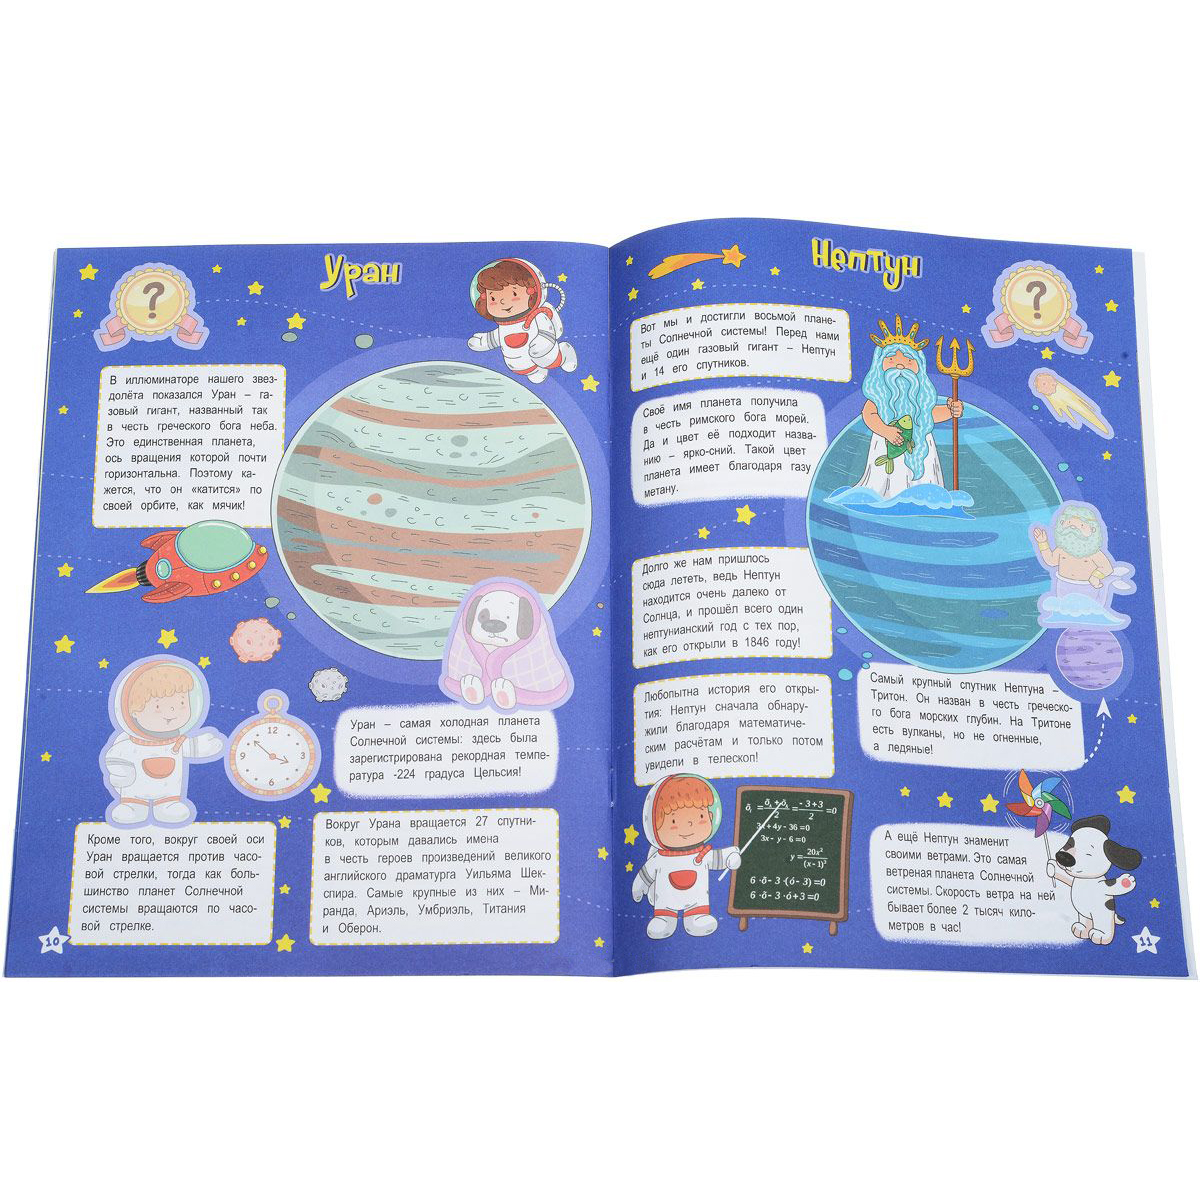 Космос читать детям. Книги о планетах для детей. Познавательные книги о космосе для детей. Детские книги про космос. Книги о космосе для детей.